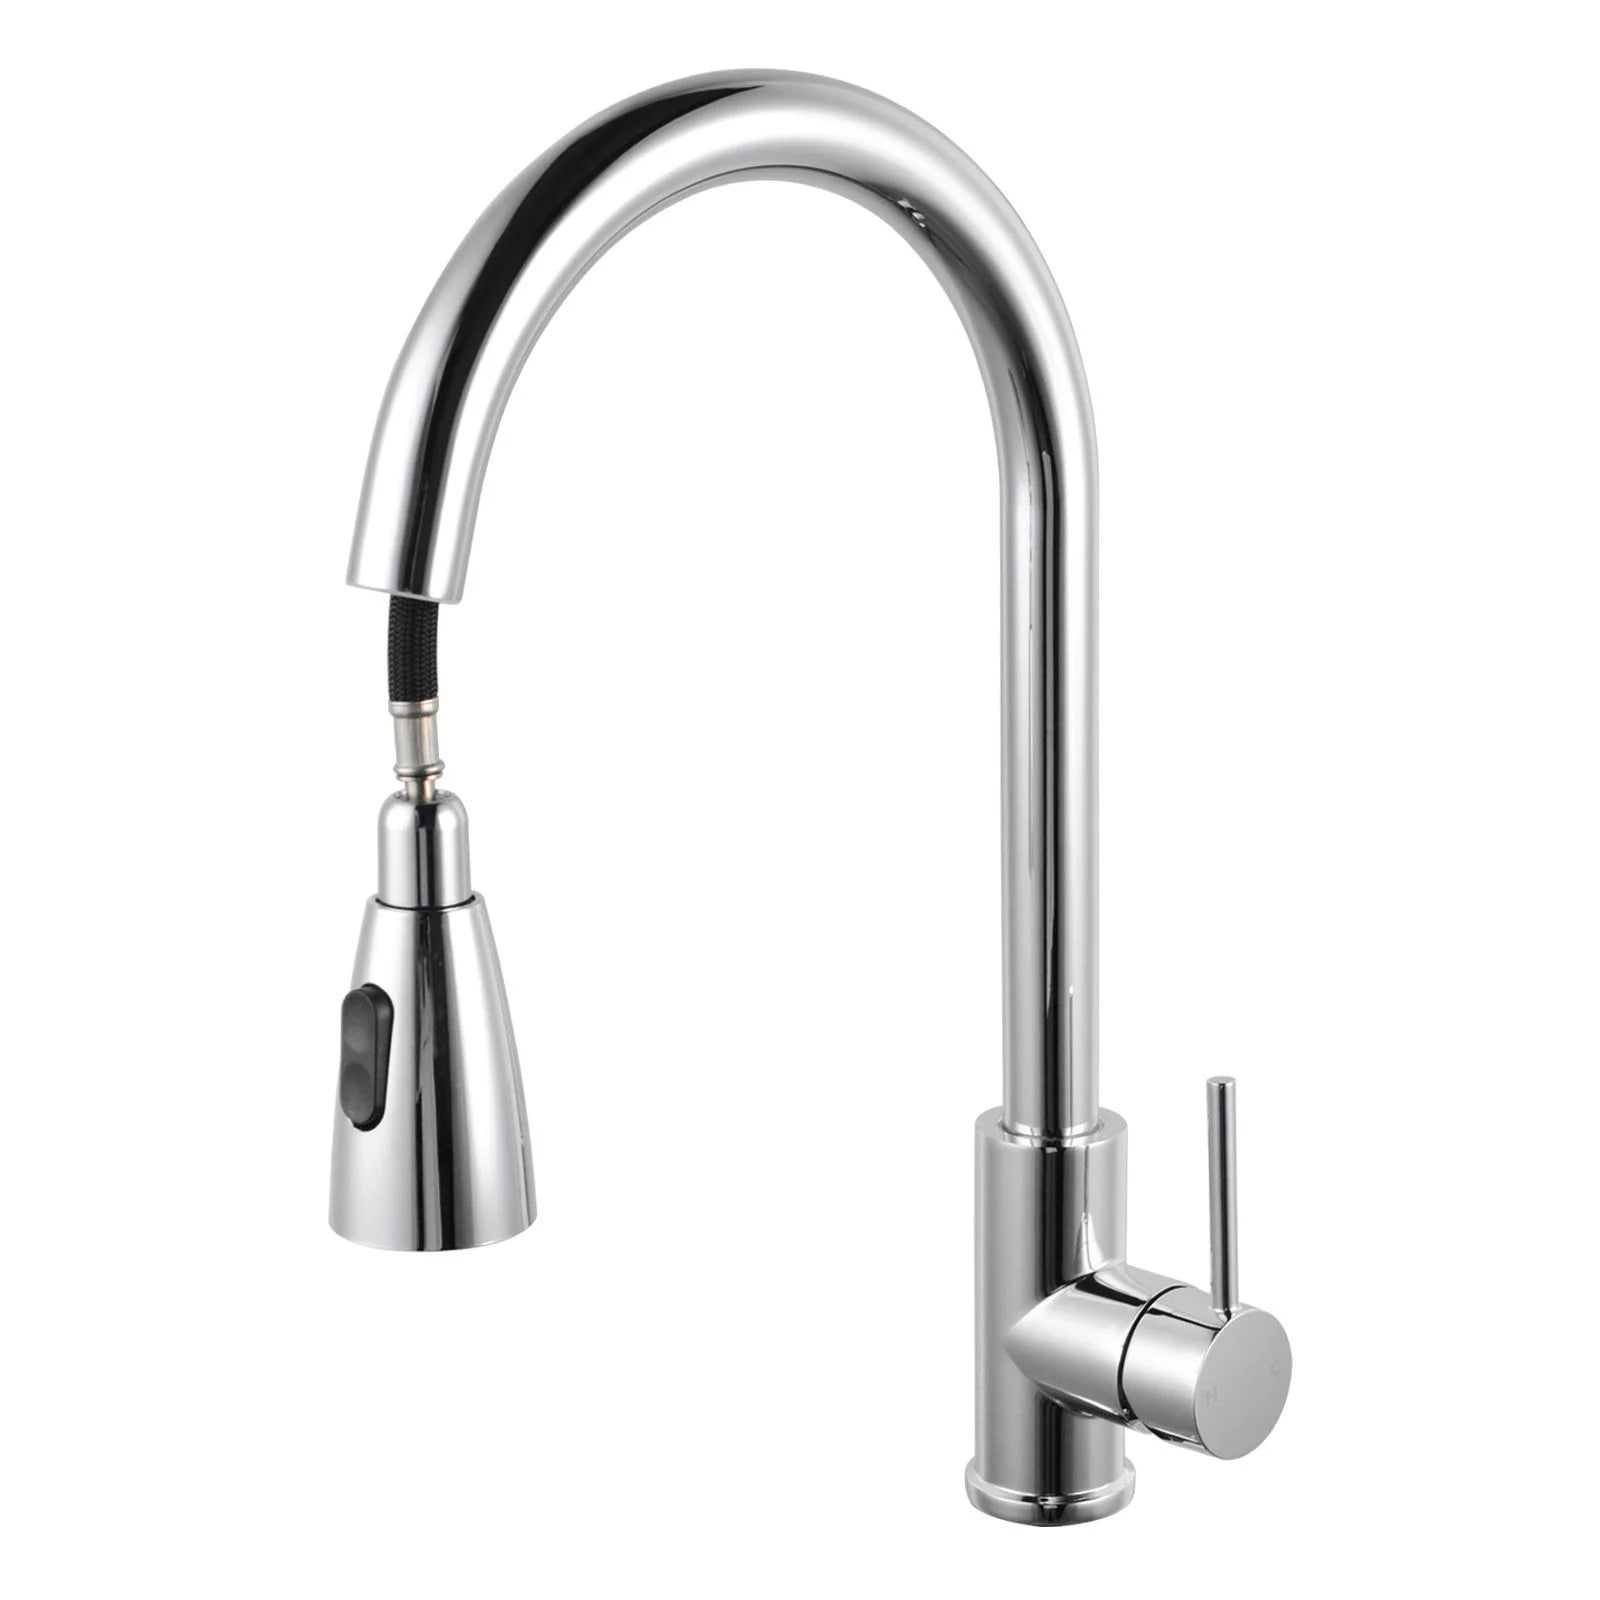 Round Pull Out Shower Kitchen Sink Mixer Tap: Versatile and convenient for kitchen tasks-CH1019.KM